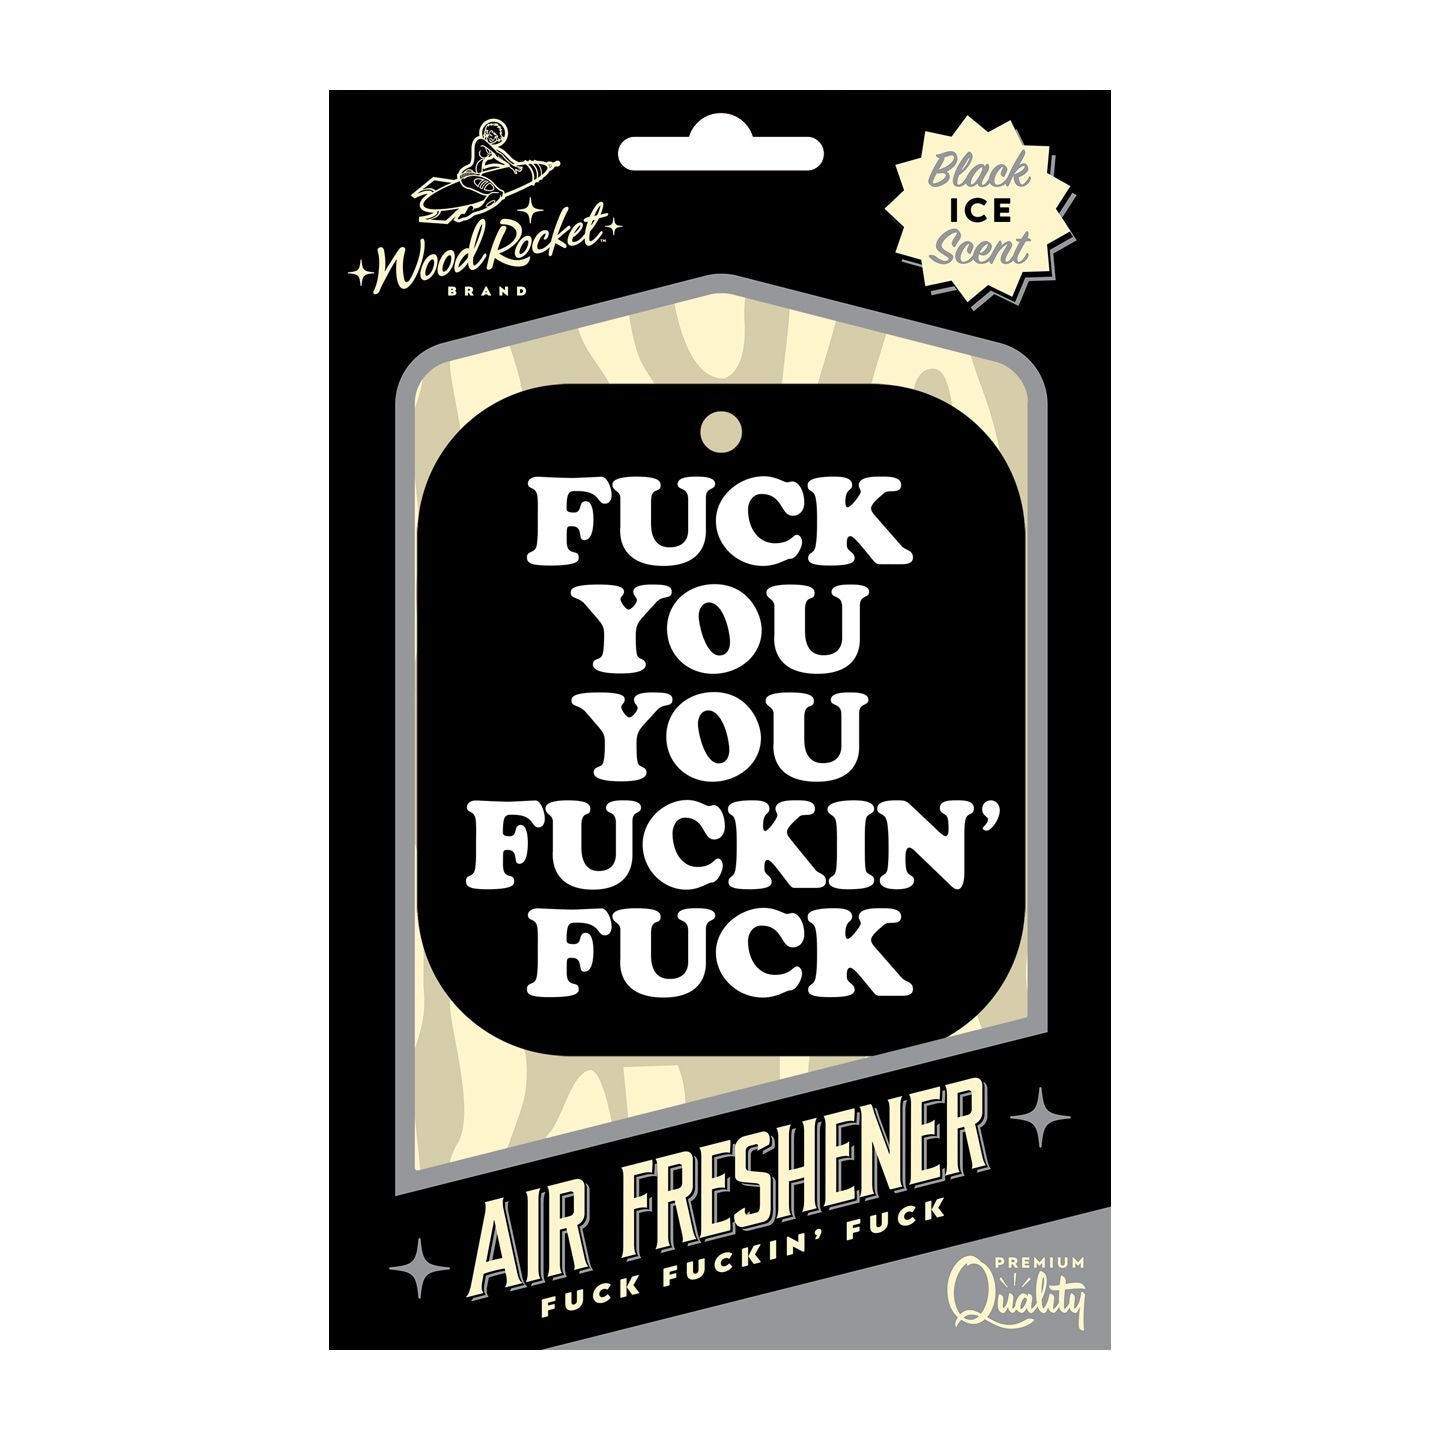 FUCK YOU YOU FUCKING FUCK AIR FRESHENER